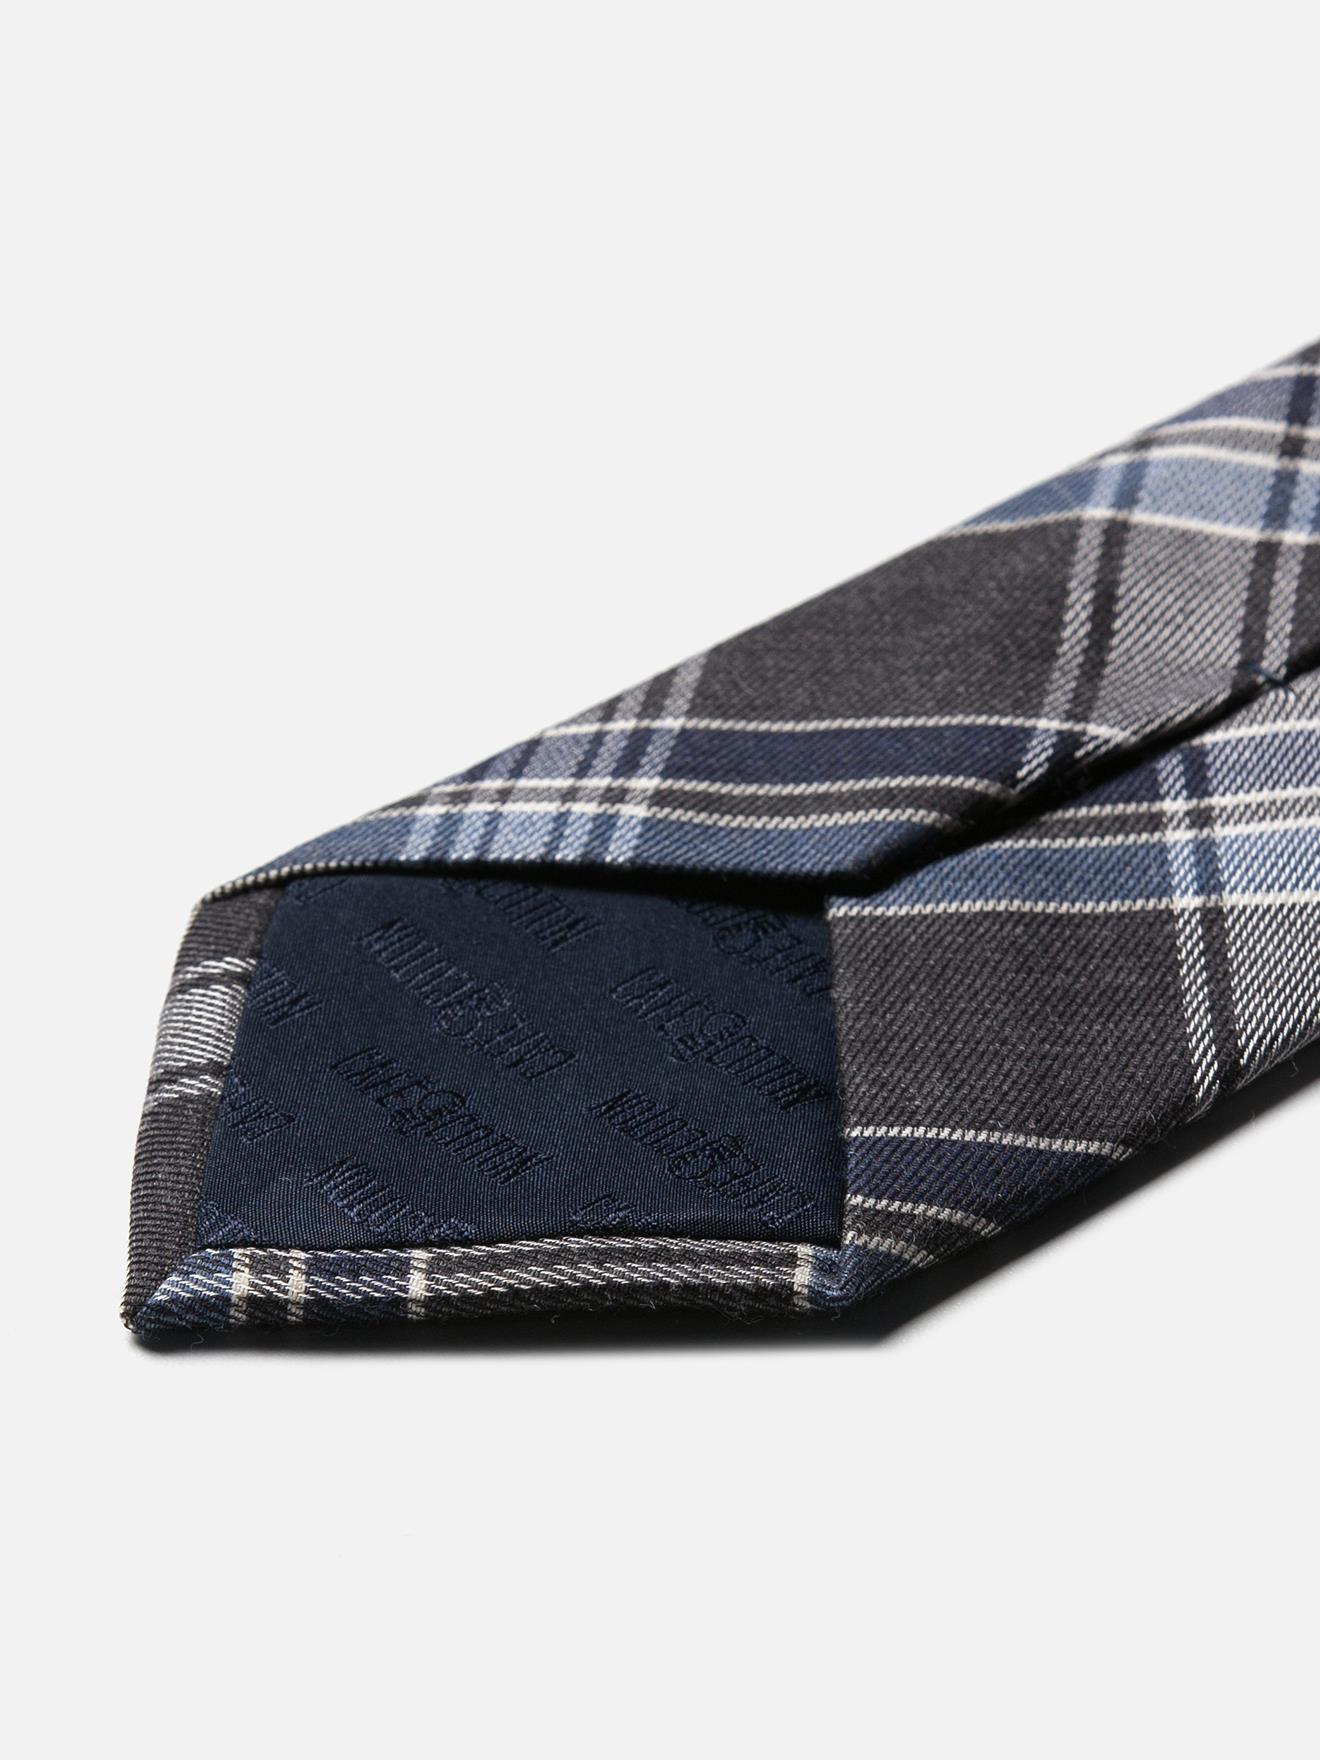 Cravate en soie à carreaux marine et gris